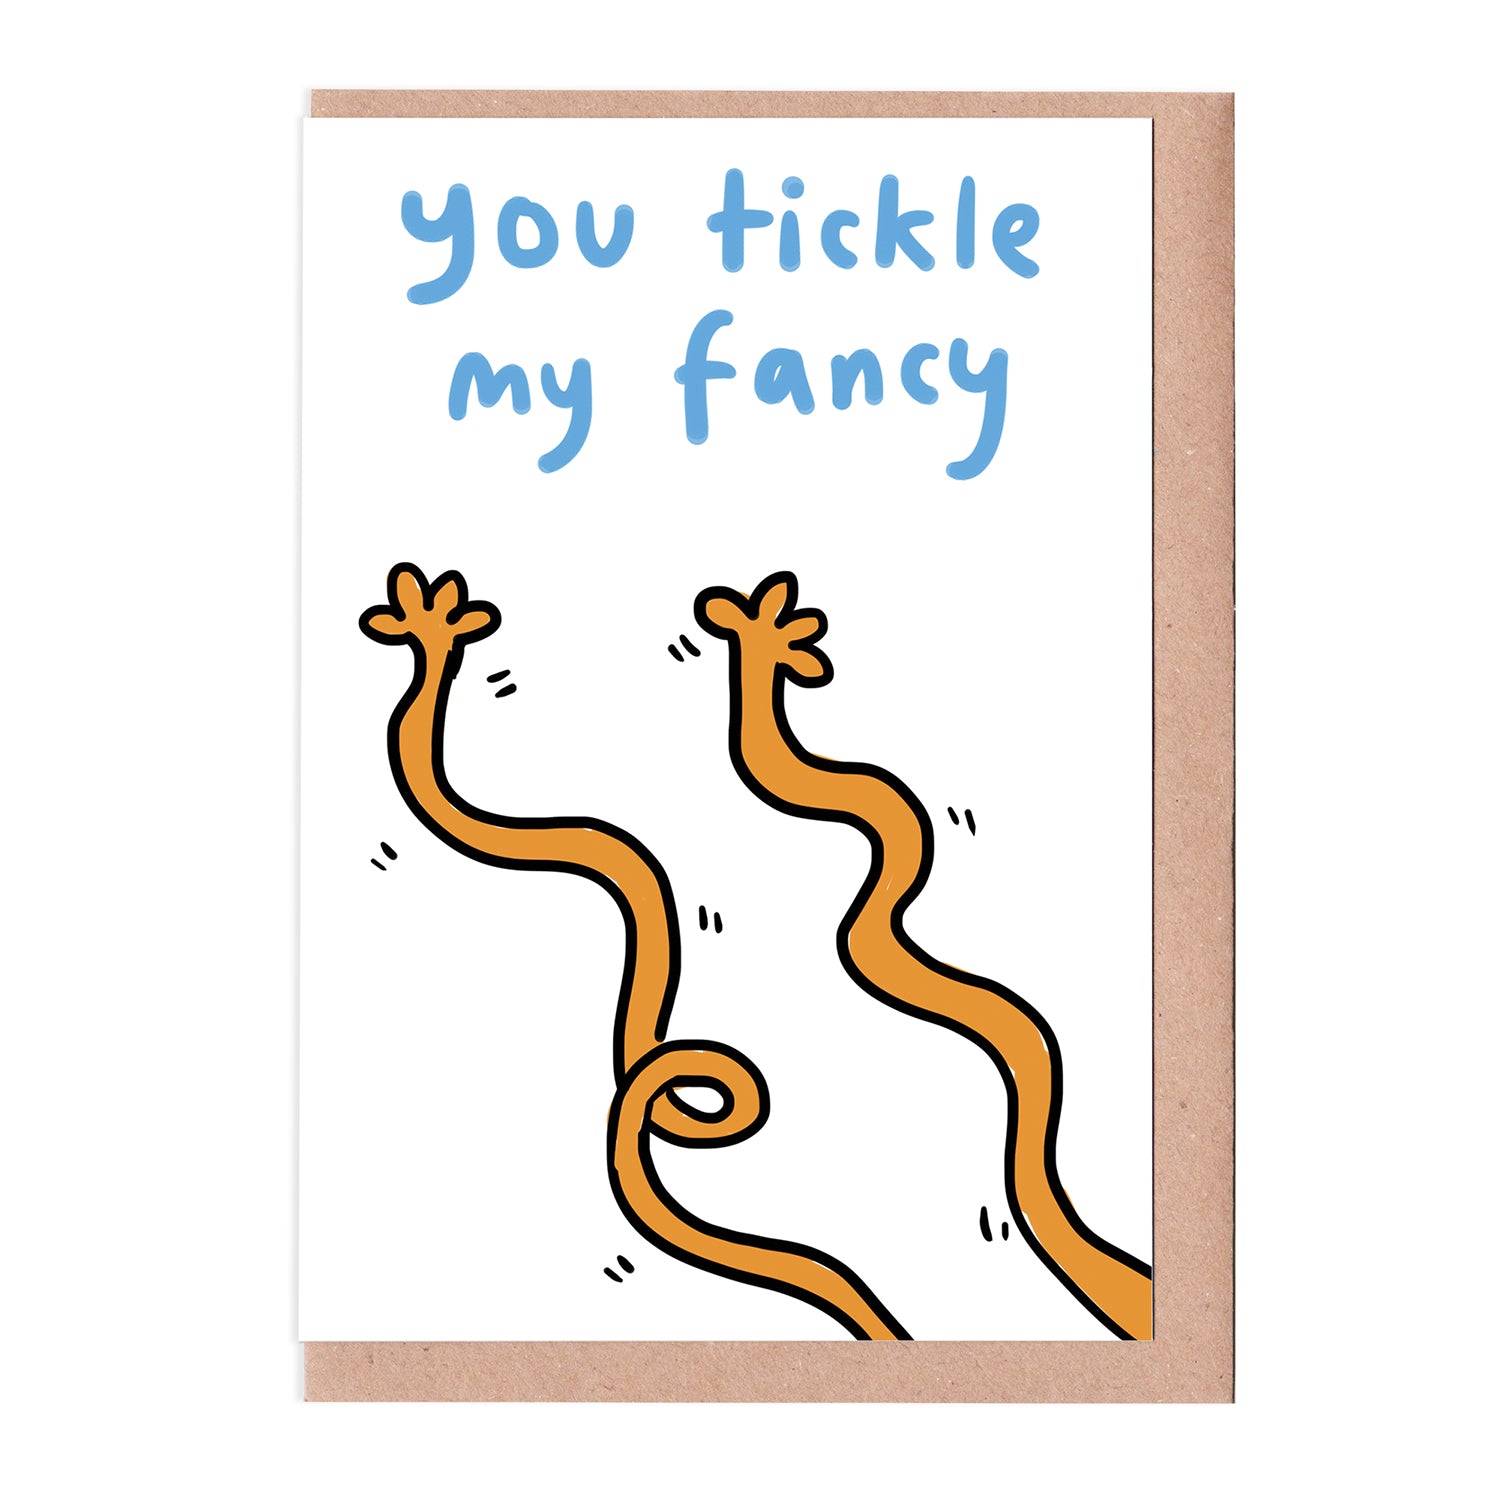 Tickle my fancy card